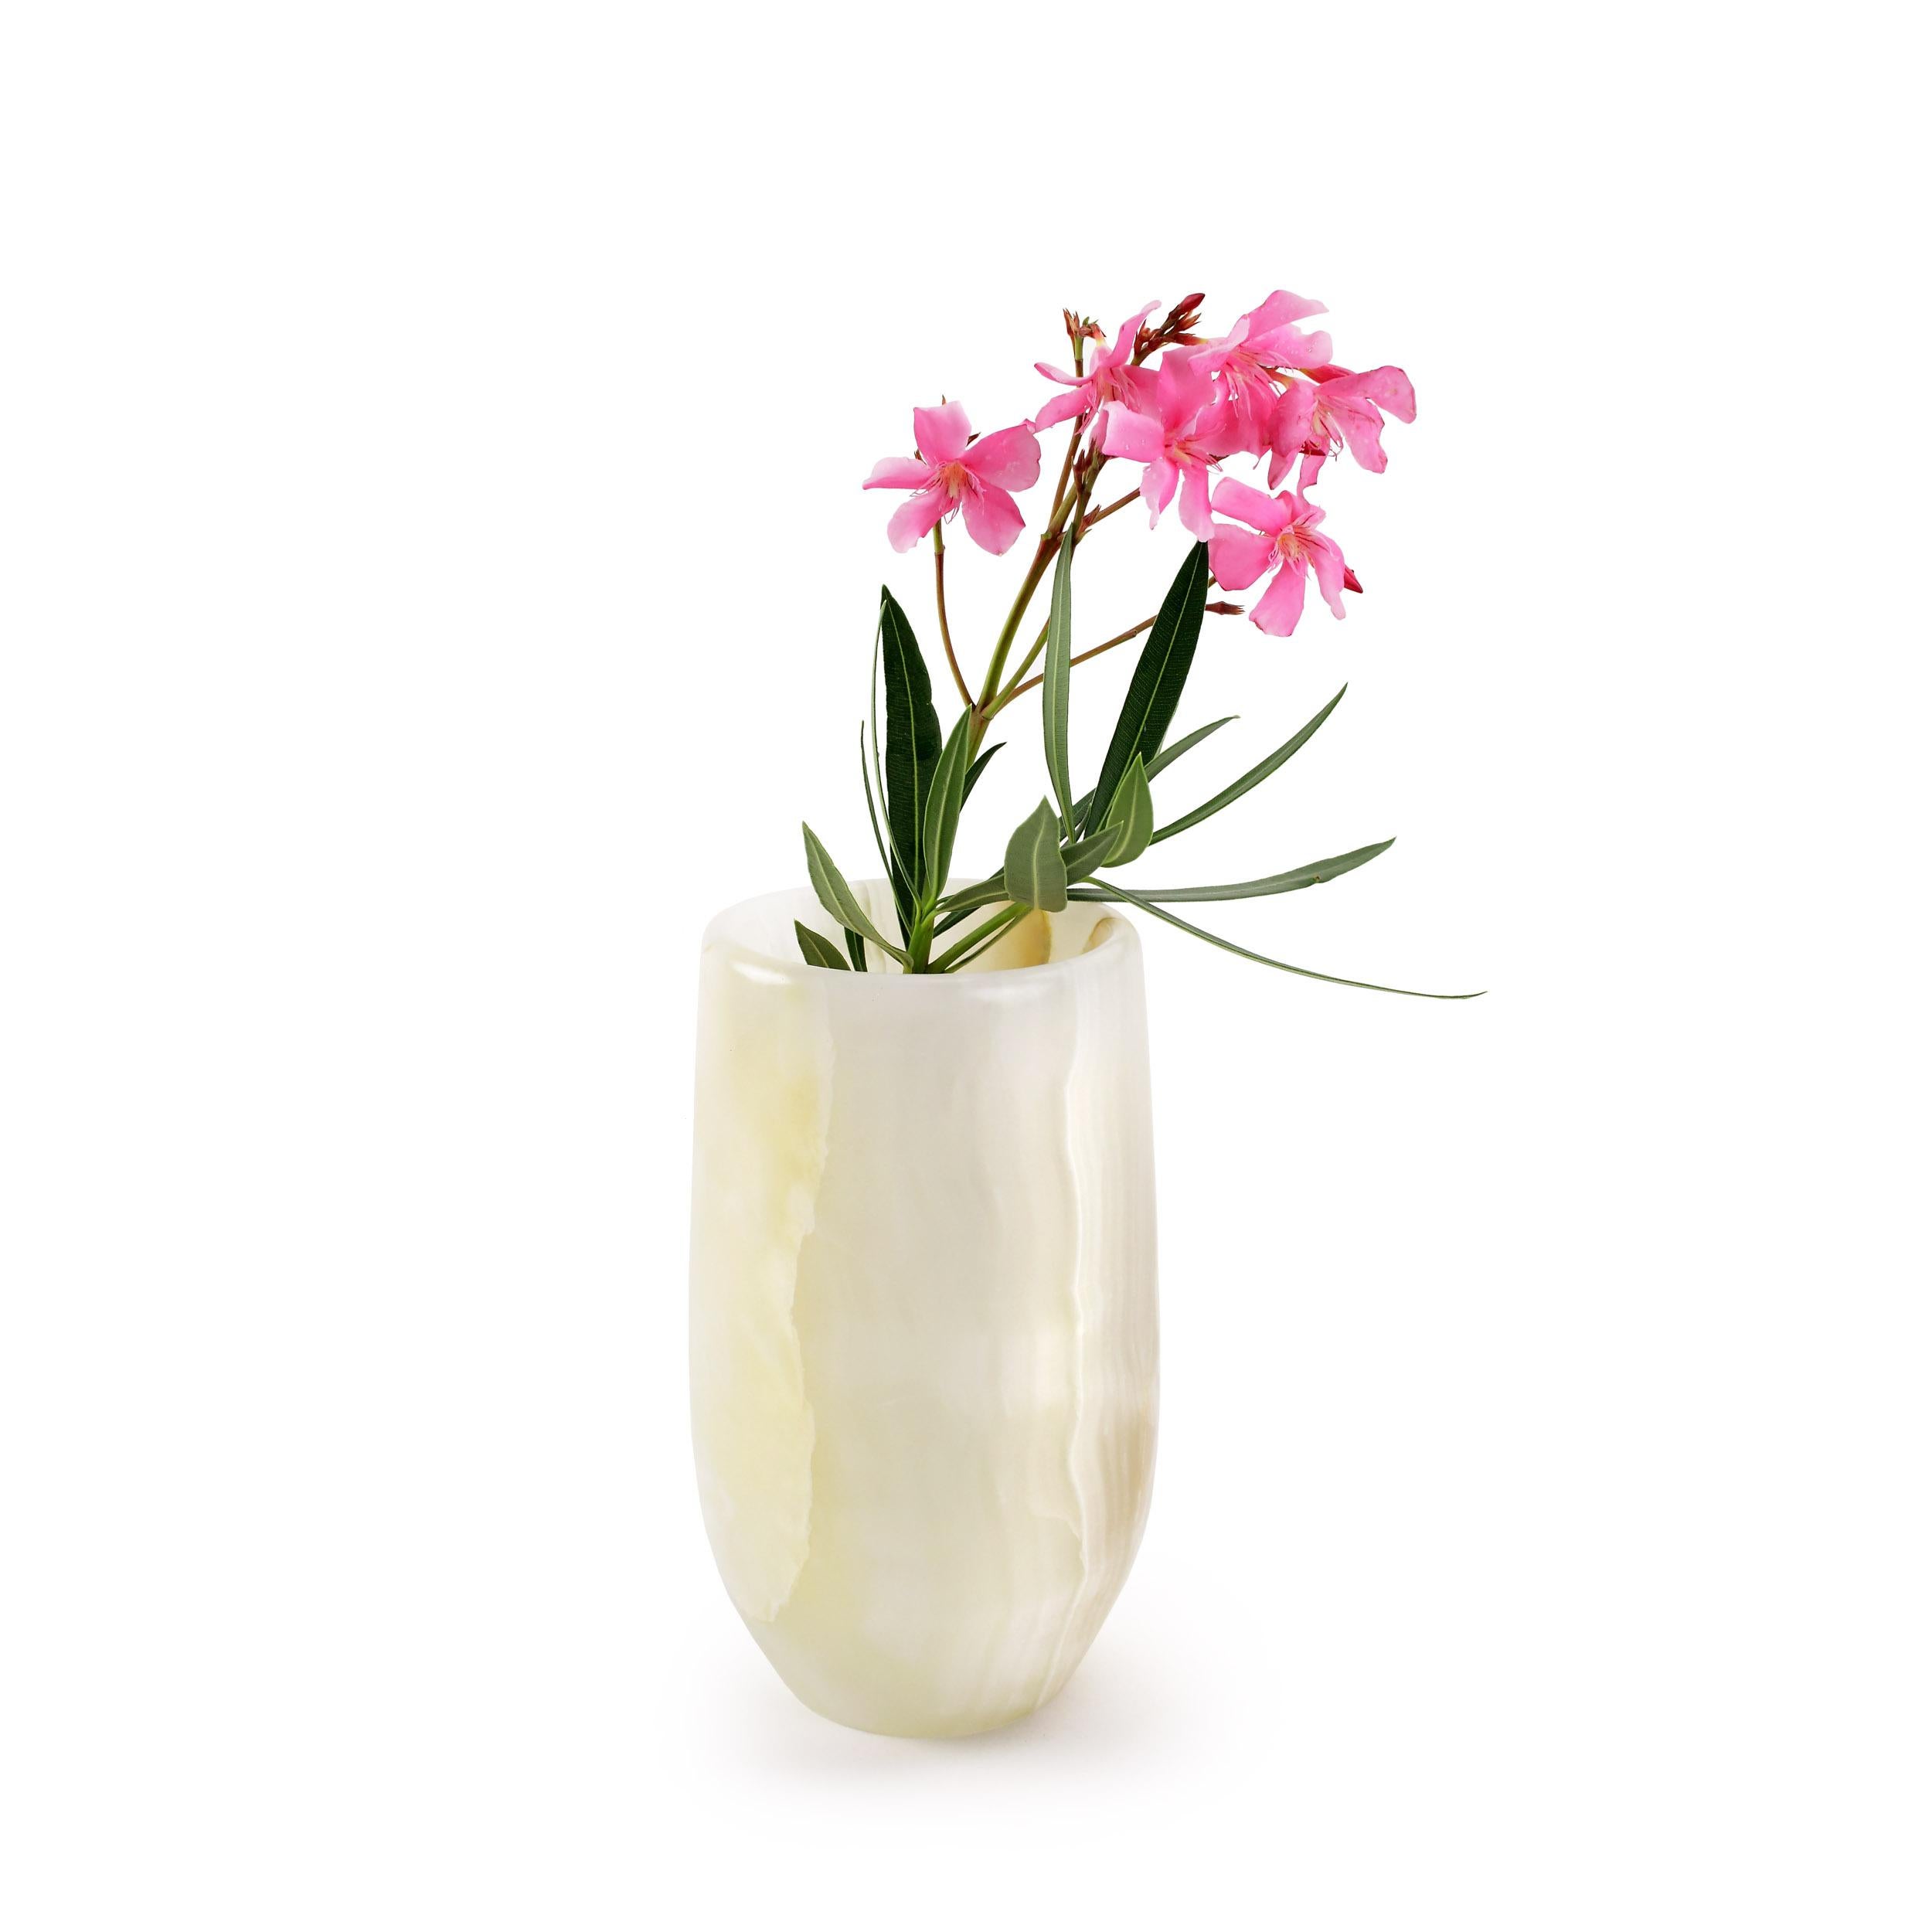 Luxueux petit vase sculpté à la main dans un bloc massif d'onyx blanc. 

Dimensions du vase : D 13, H 22 cm. La finition polie souligne la transparence de l'onyx, ce qui en fait un objet très précieux.
Disponible en différents marbres, onyx et